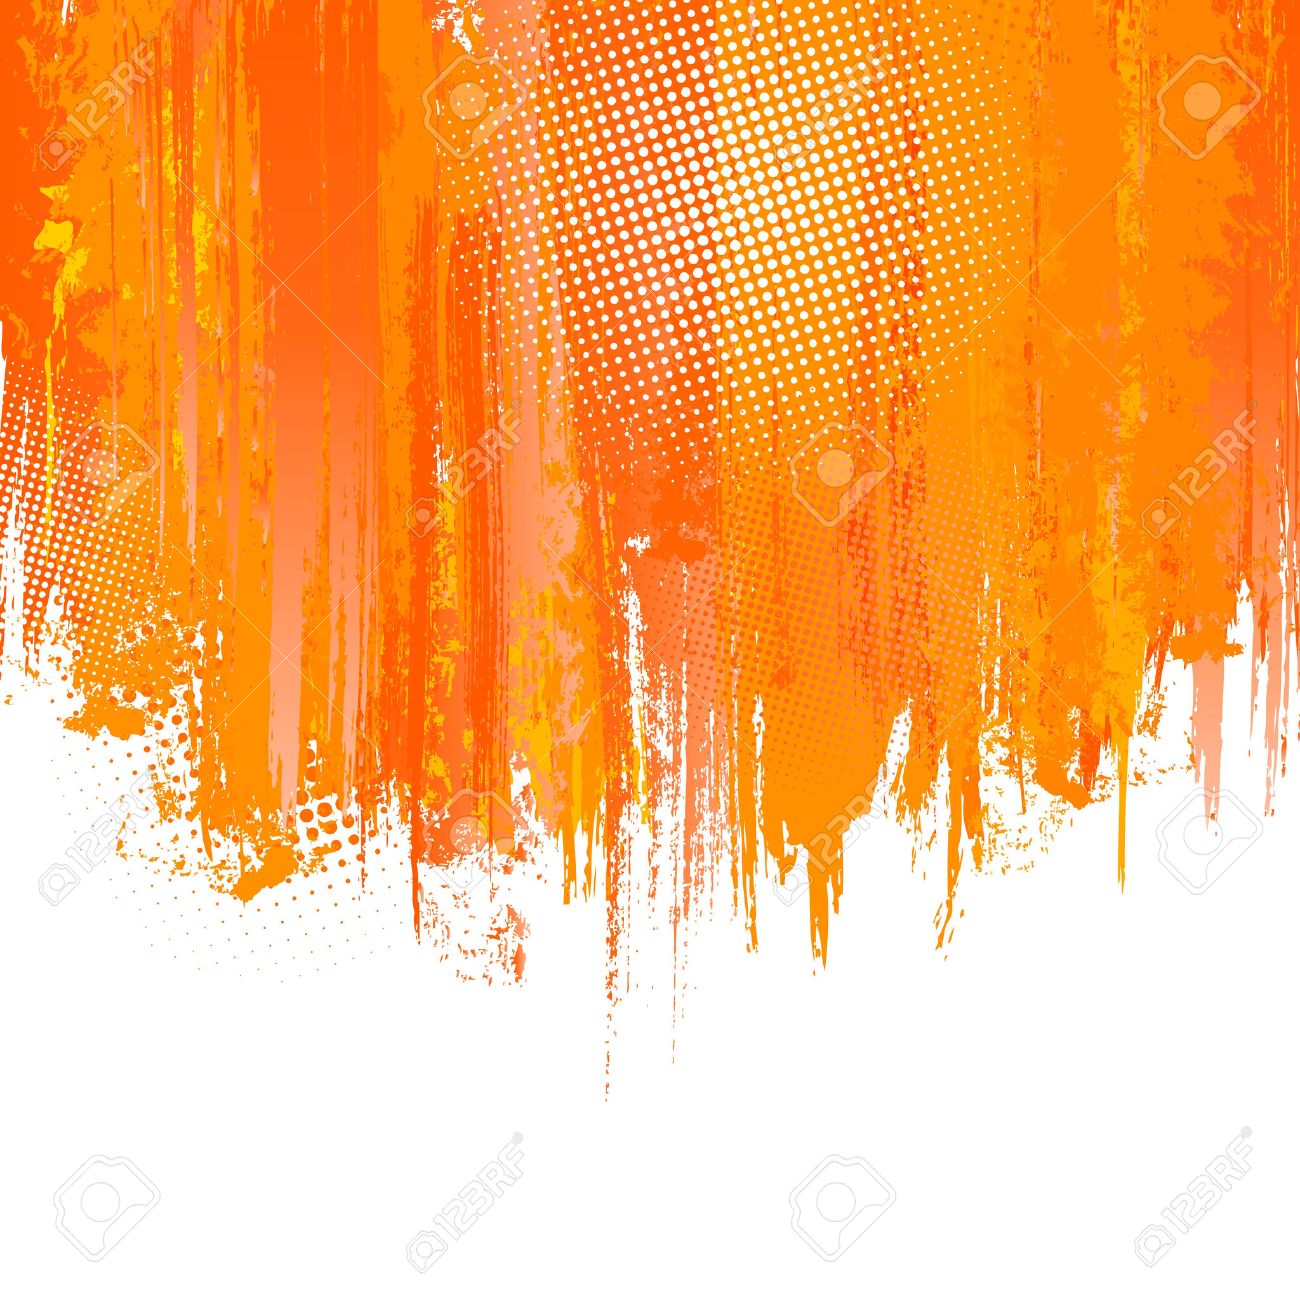 Hãy tải về nền vector nơi các sươn màu cam được phóng thích để tạo hiệu ứng độc đáo cho bất kỳ dự án nào của bạn! Nền này không chỉ tạo ra sự tươi mới và sáng tạo, mà còn cho phép bạn thêm một chút màu sắc đến công việc của mình mà không cần nhiều công sức.